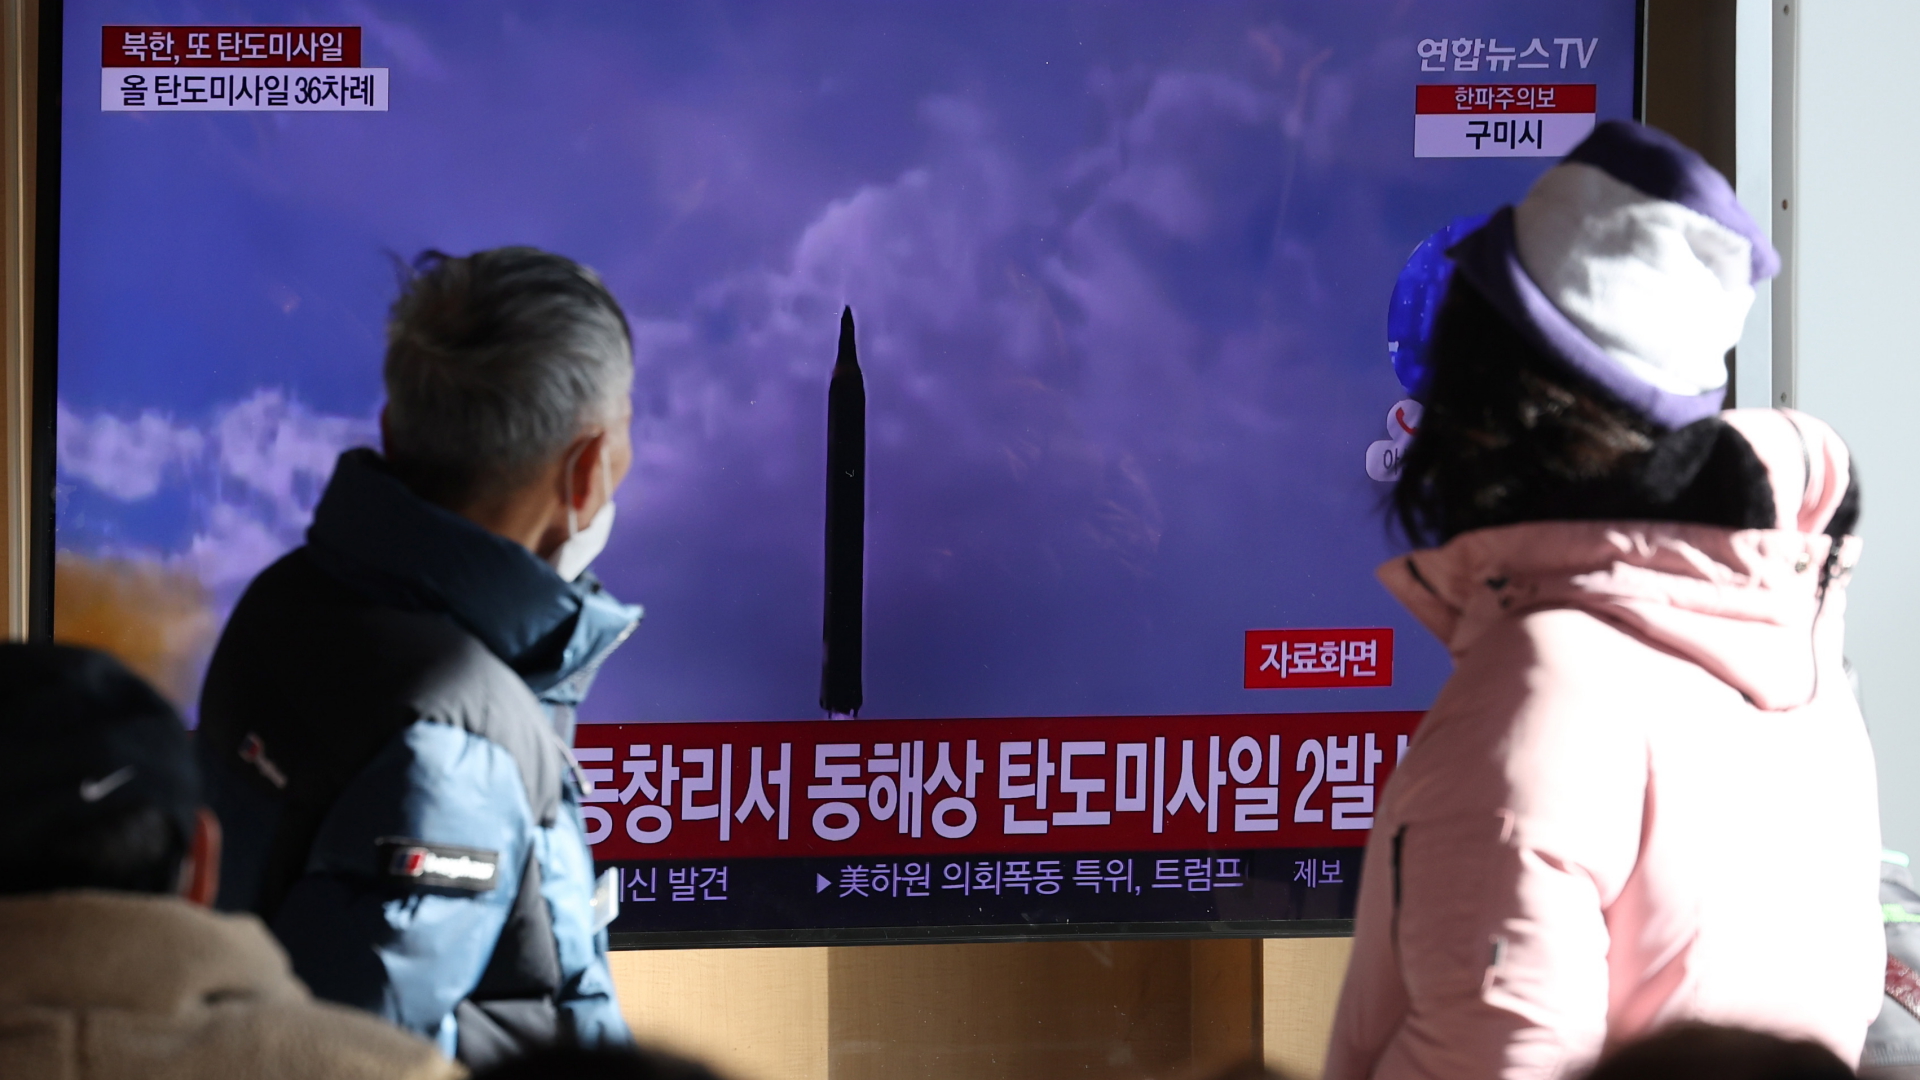 Menschen in Seoul, Südkorea, sehen die Berichterstattung über die nordkoreanischen Raketentests, 18.12.22 | EPA